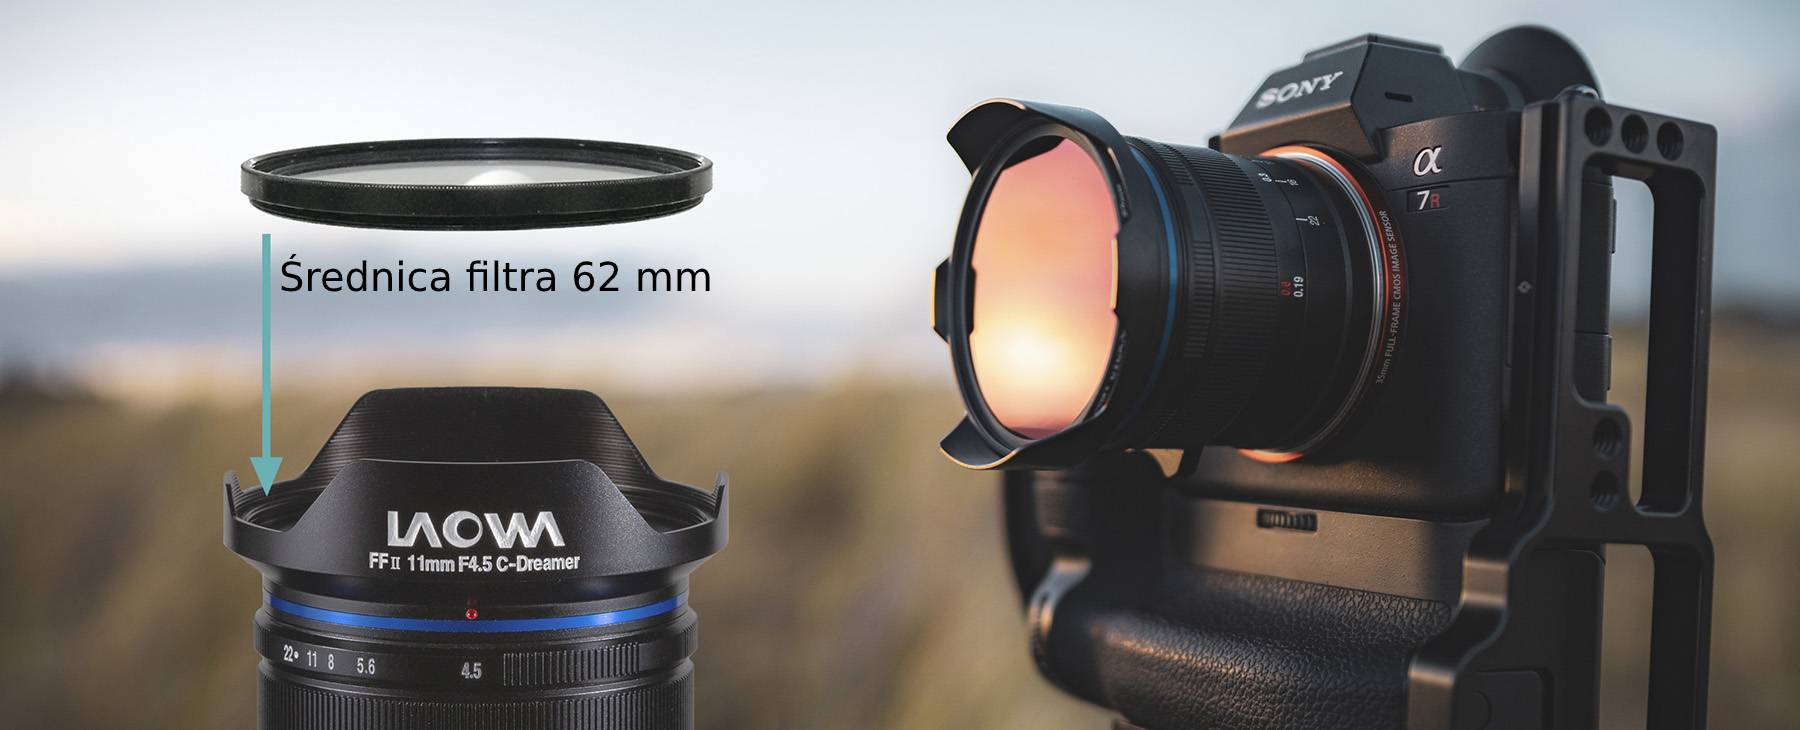 Venus Optics Laowa 11 mm f/4.5 FF RL lens for Leica M - black